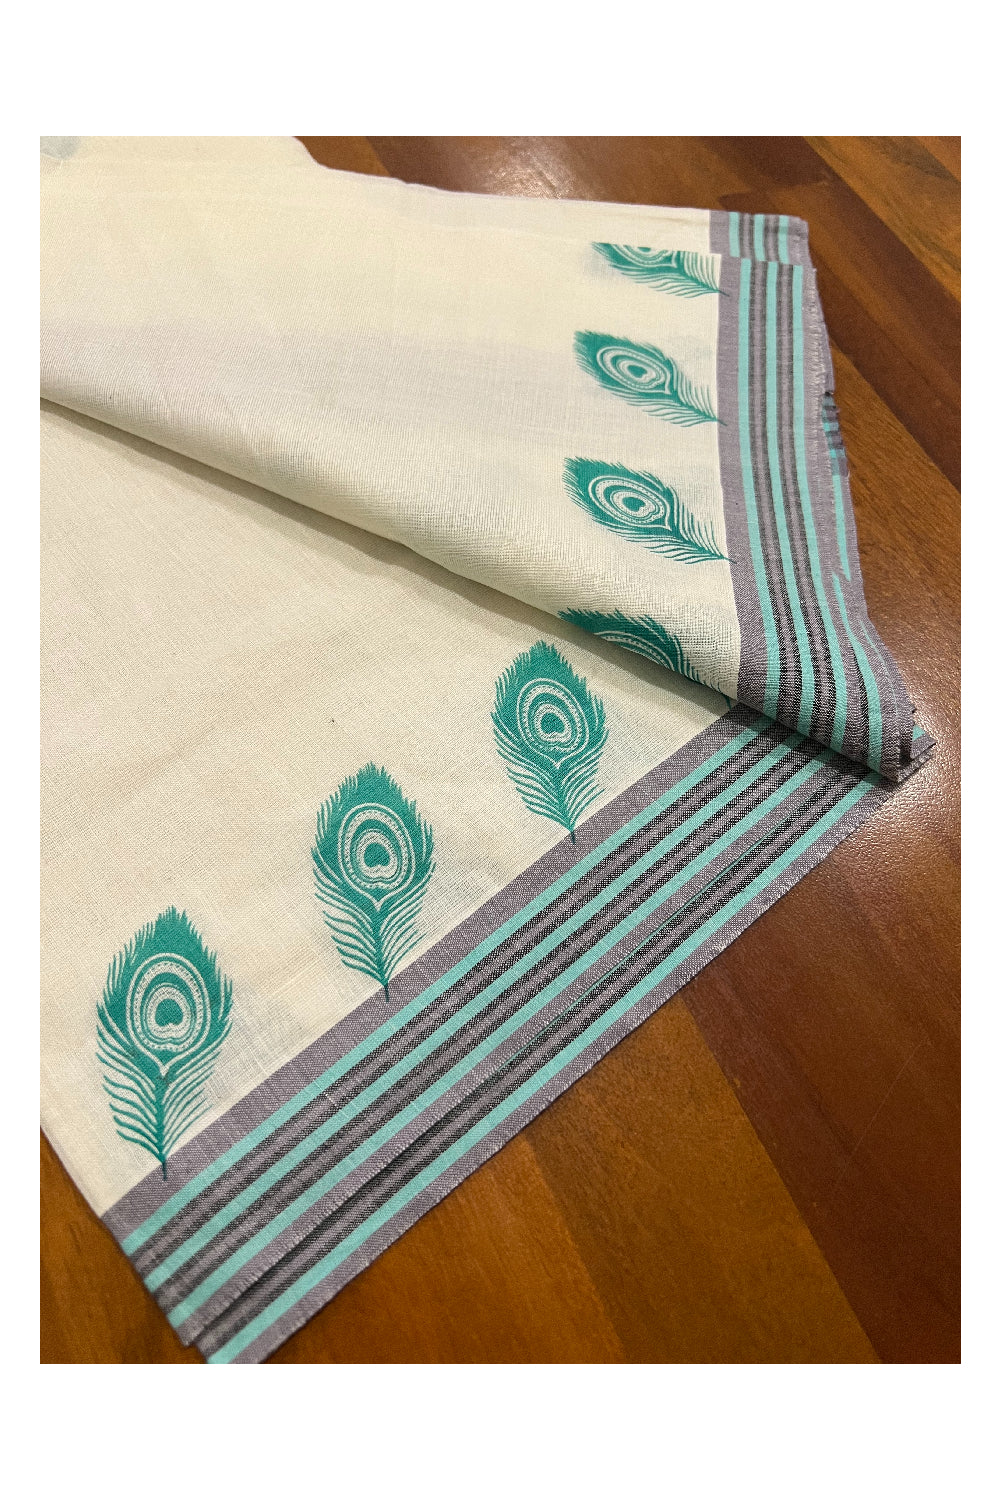 Pure Cotton Set Mundu (Mundum Neriyathum) with Turquoise Feather Block Prints on Grey and Turquoise Border